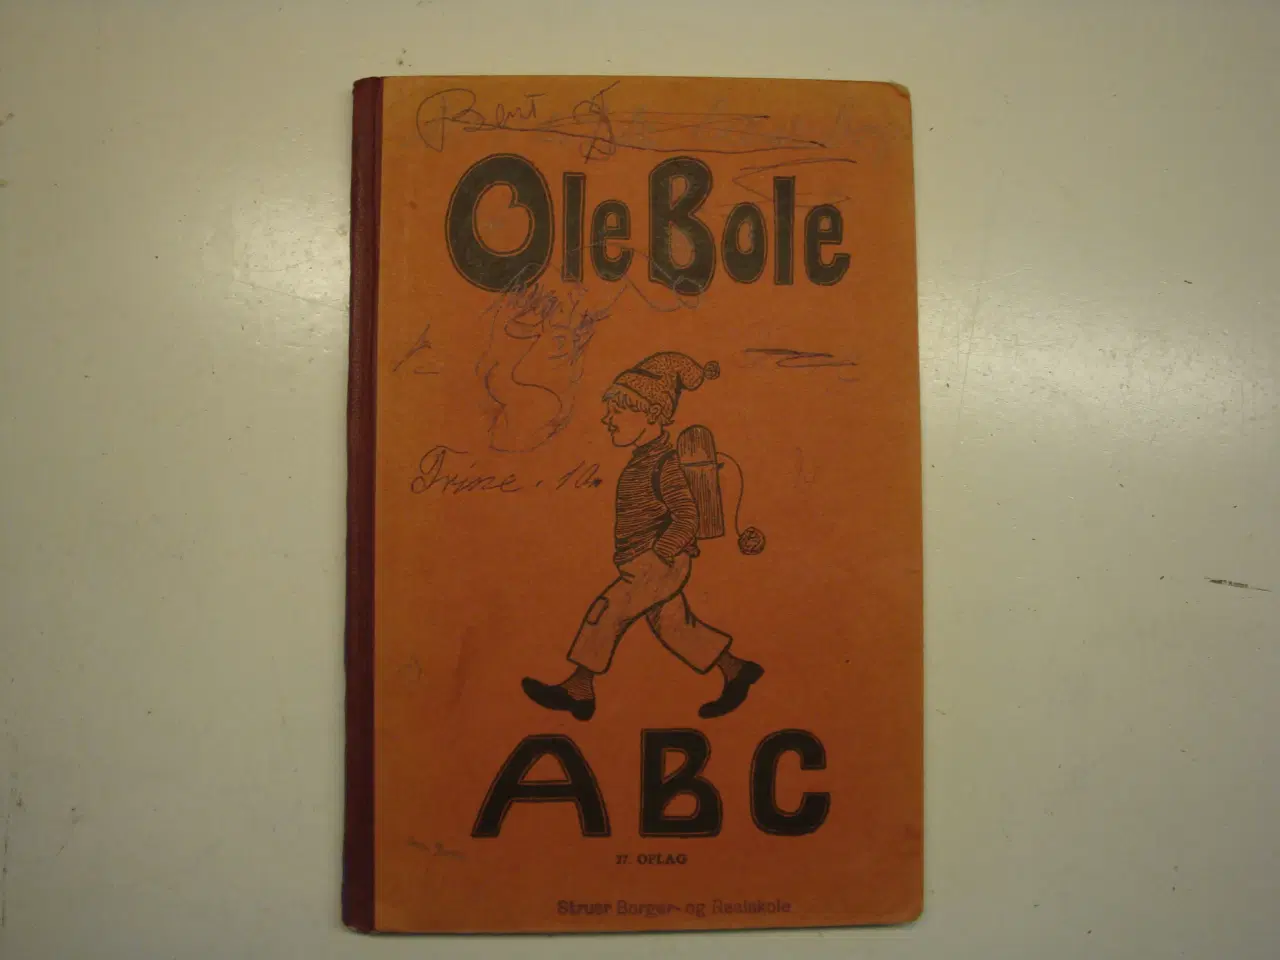 Billede 1 - Gammel, godt brugt Ole Bole abc fra 1955